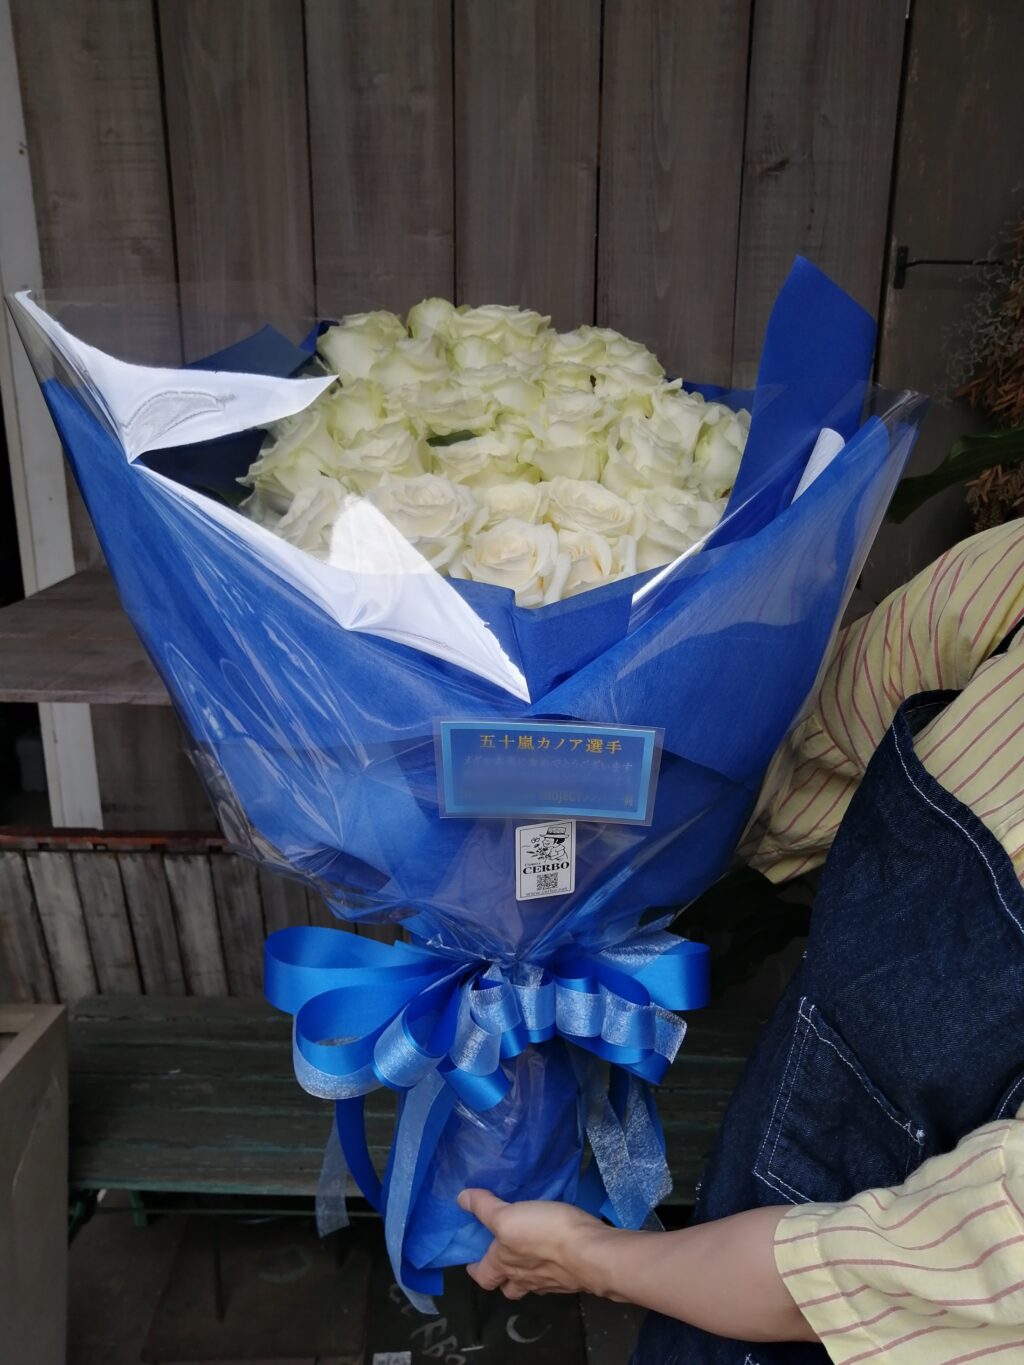 五十嵐カノア様宛にお届けした銀メダル獲得御祝いの花束。白バラのみで。